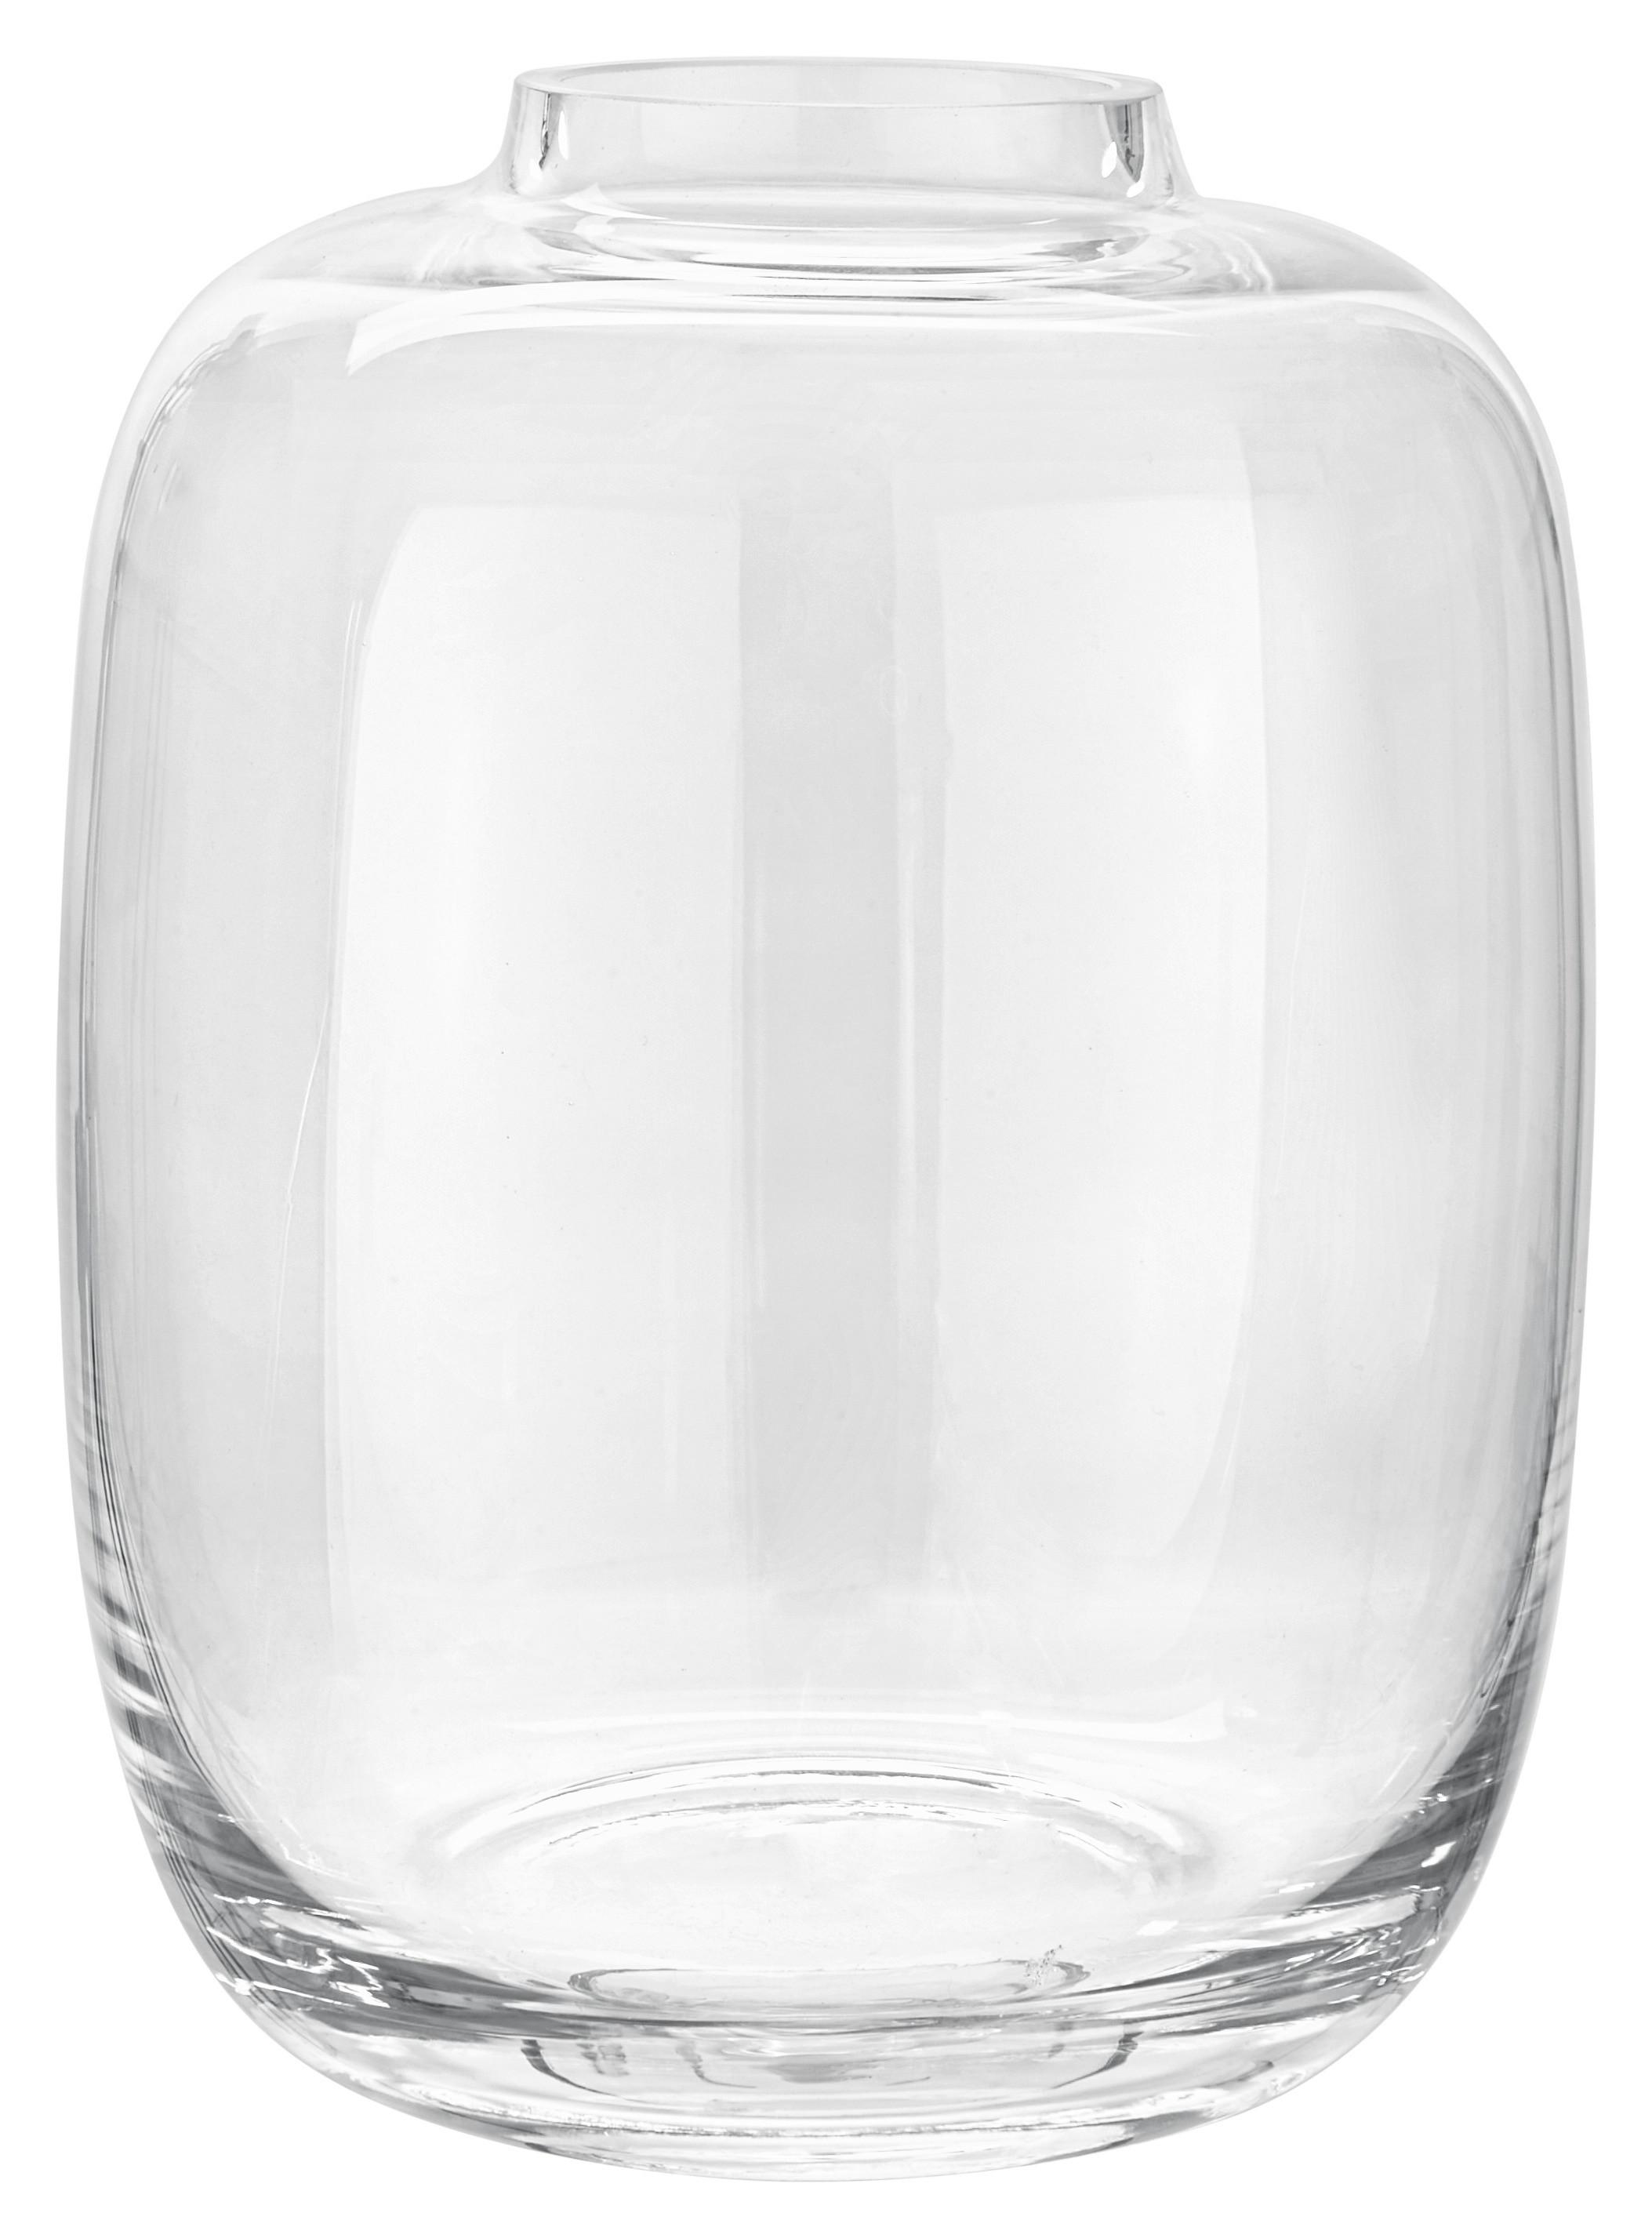 Vaza Lana - prozorno, Romantika, steklo (12/15cm) - Premium Living